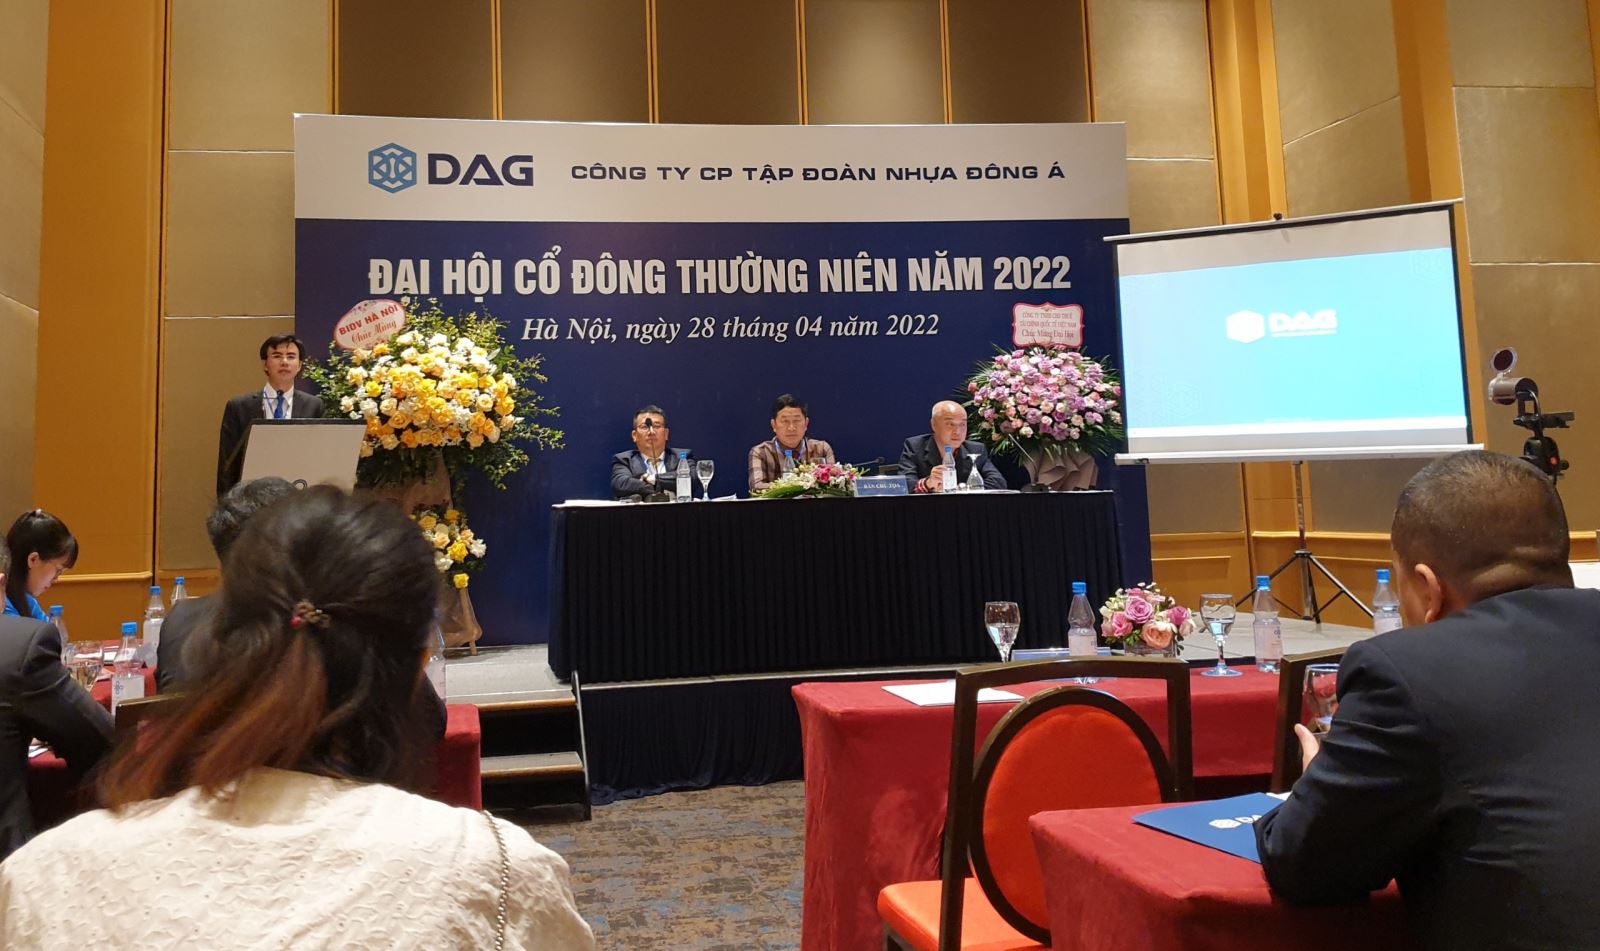 Báo cáo phân tích: Công ty Cổ phần Tập đoàn Nhựa Đông Á (DAG - HSX)